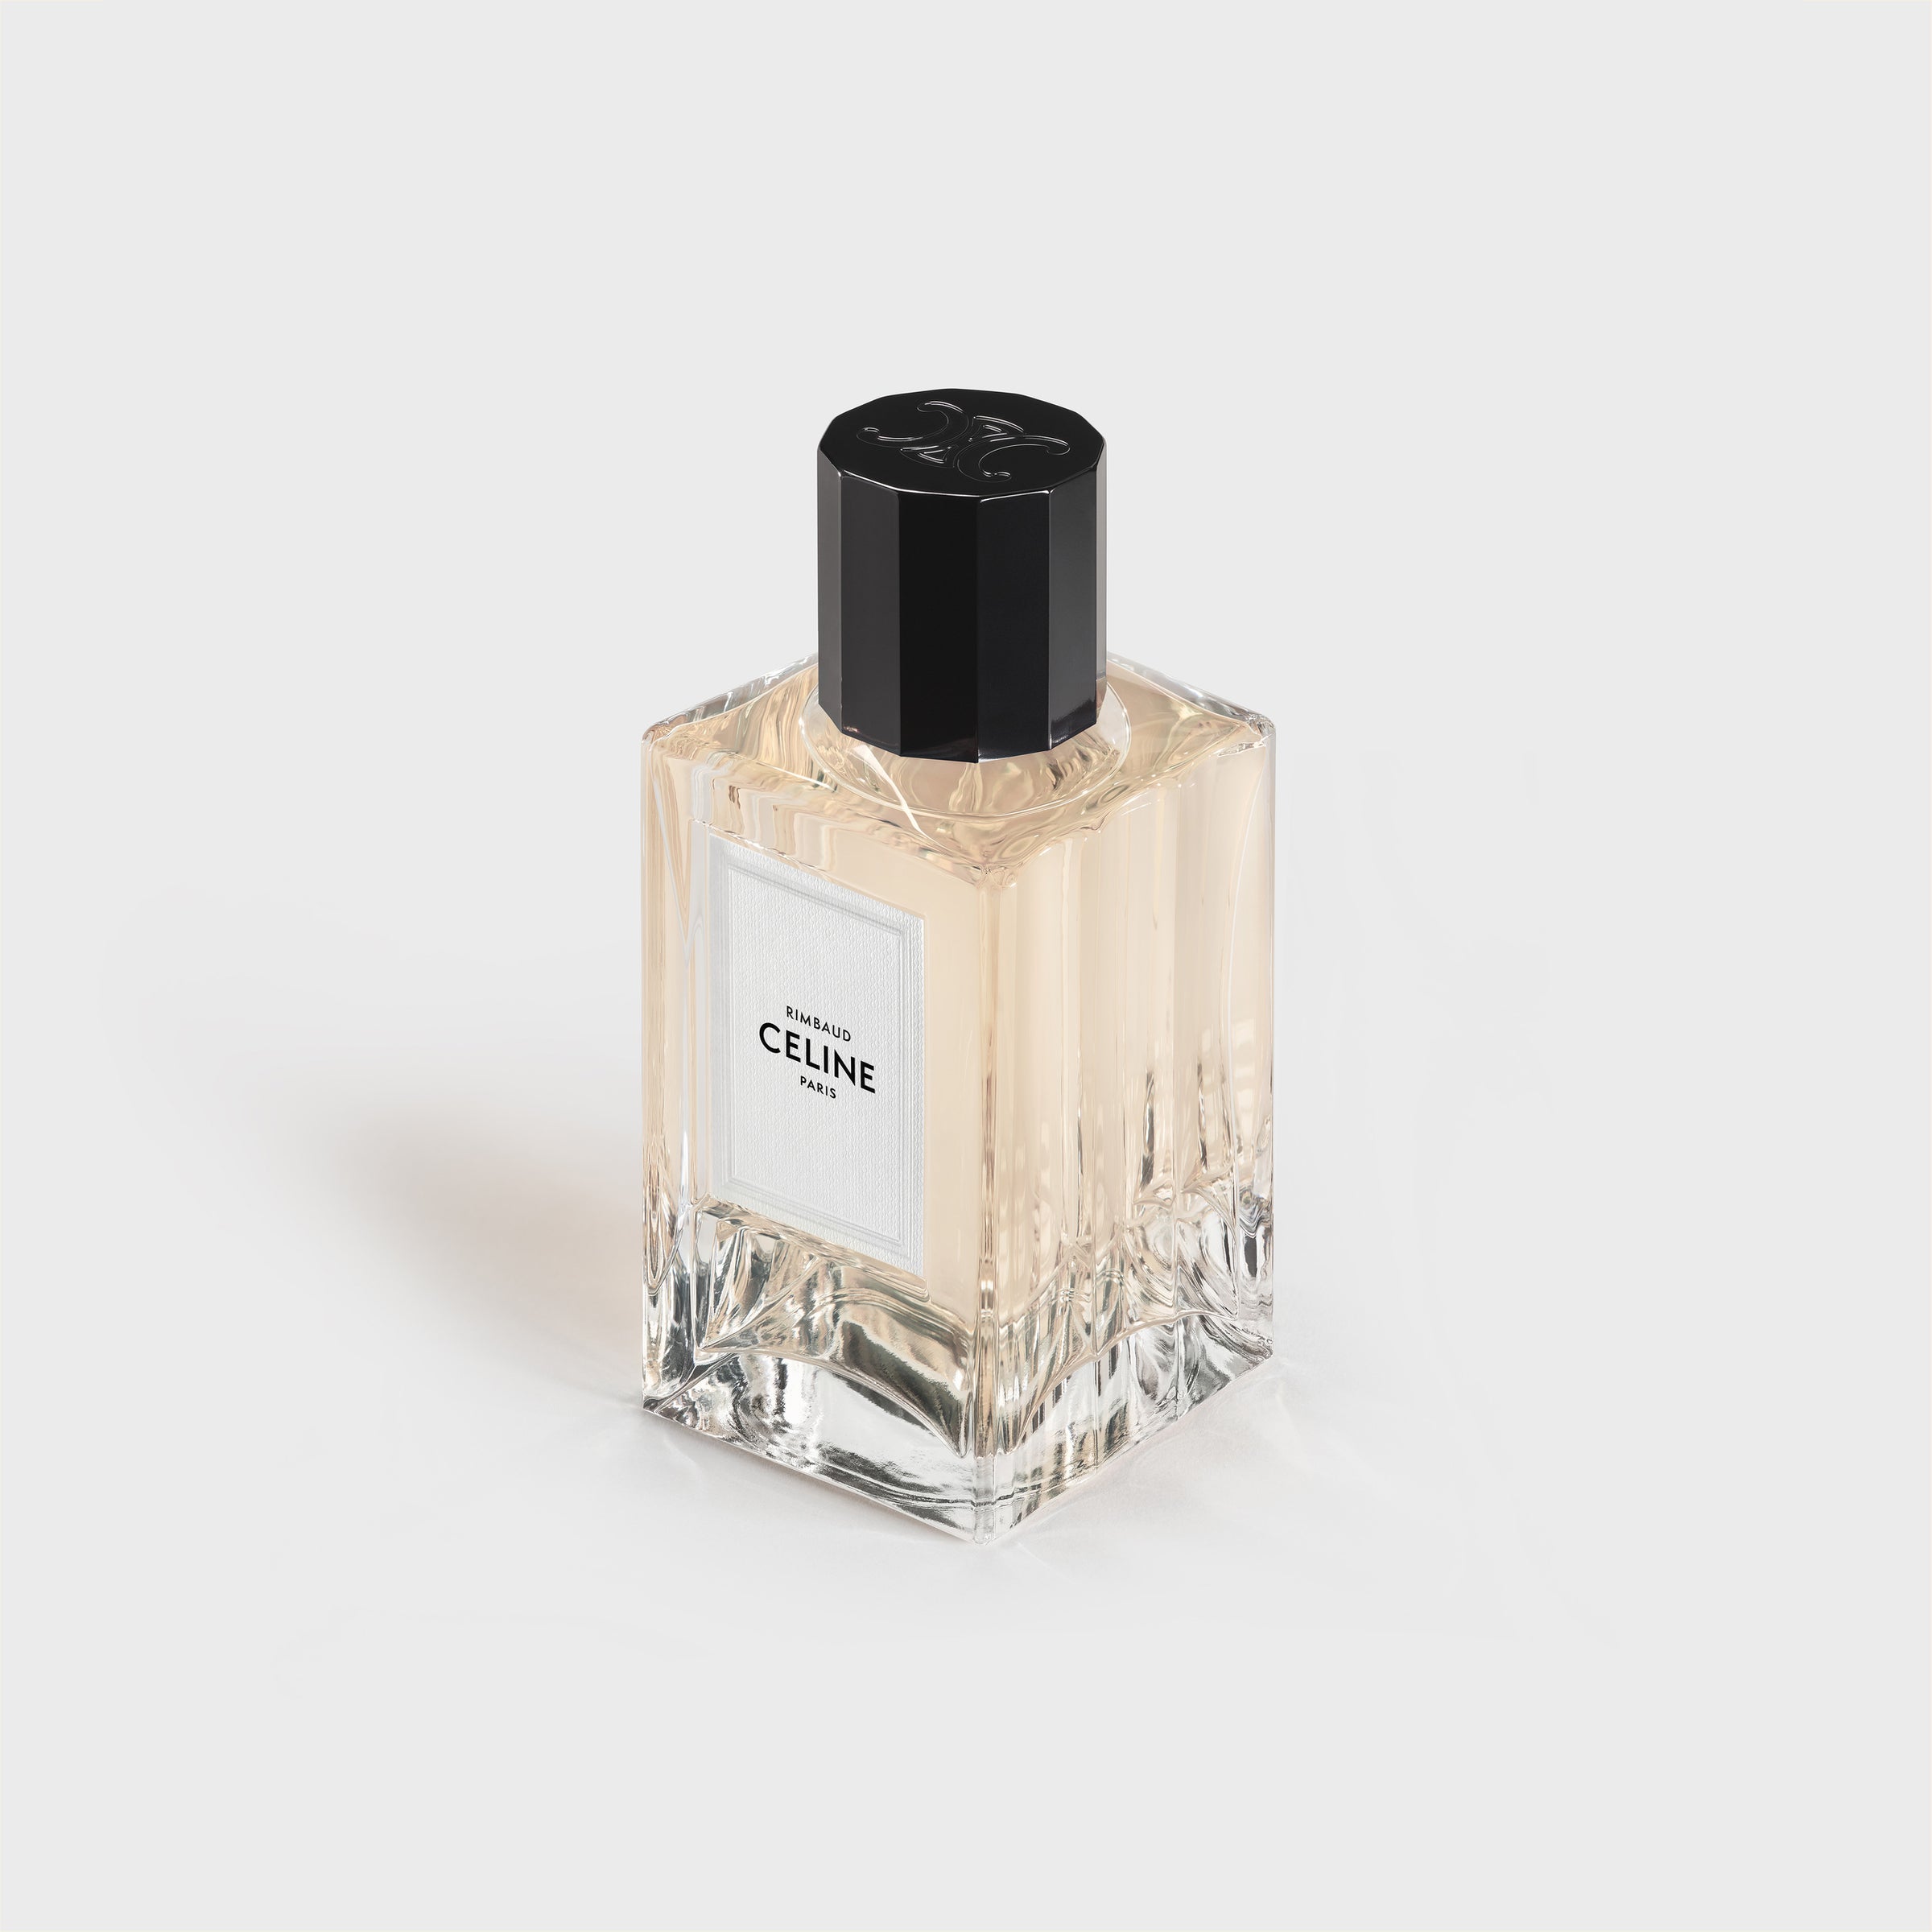 Nước Hoa CELINE Rimbaud Eau De Parfum #100 mL